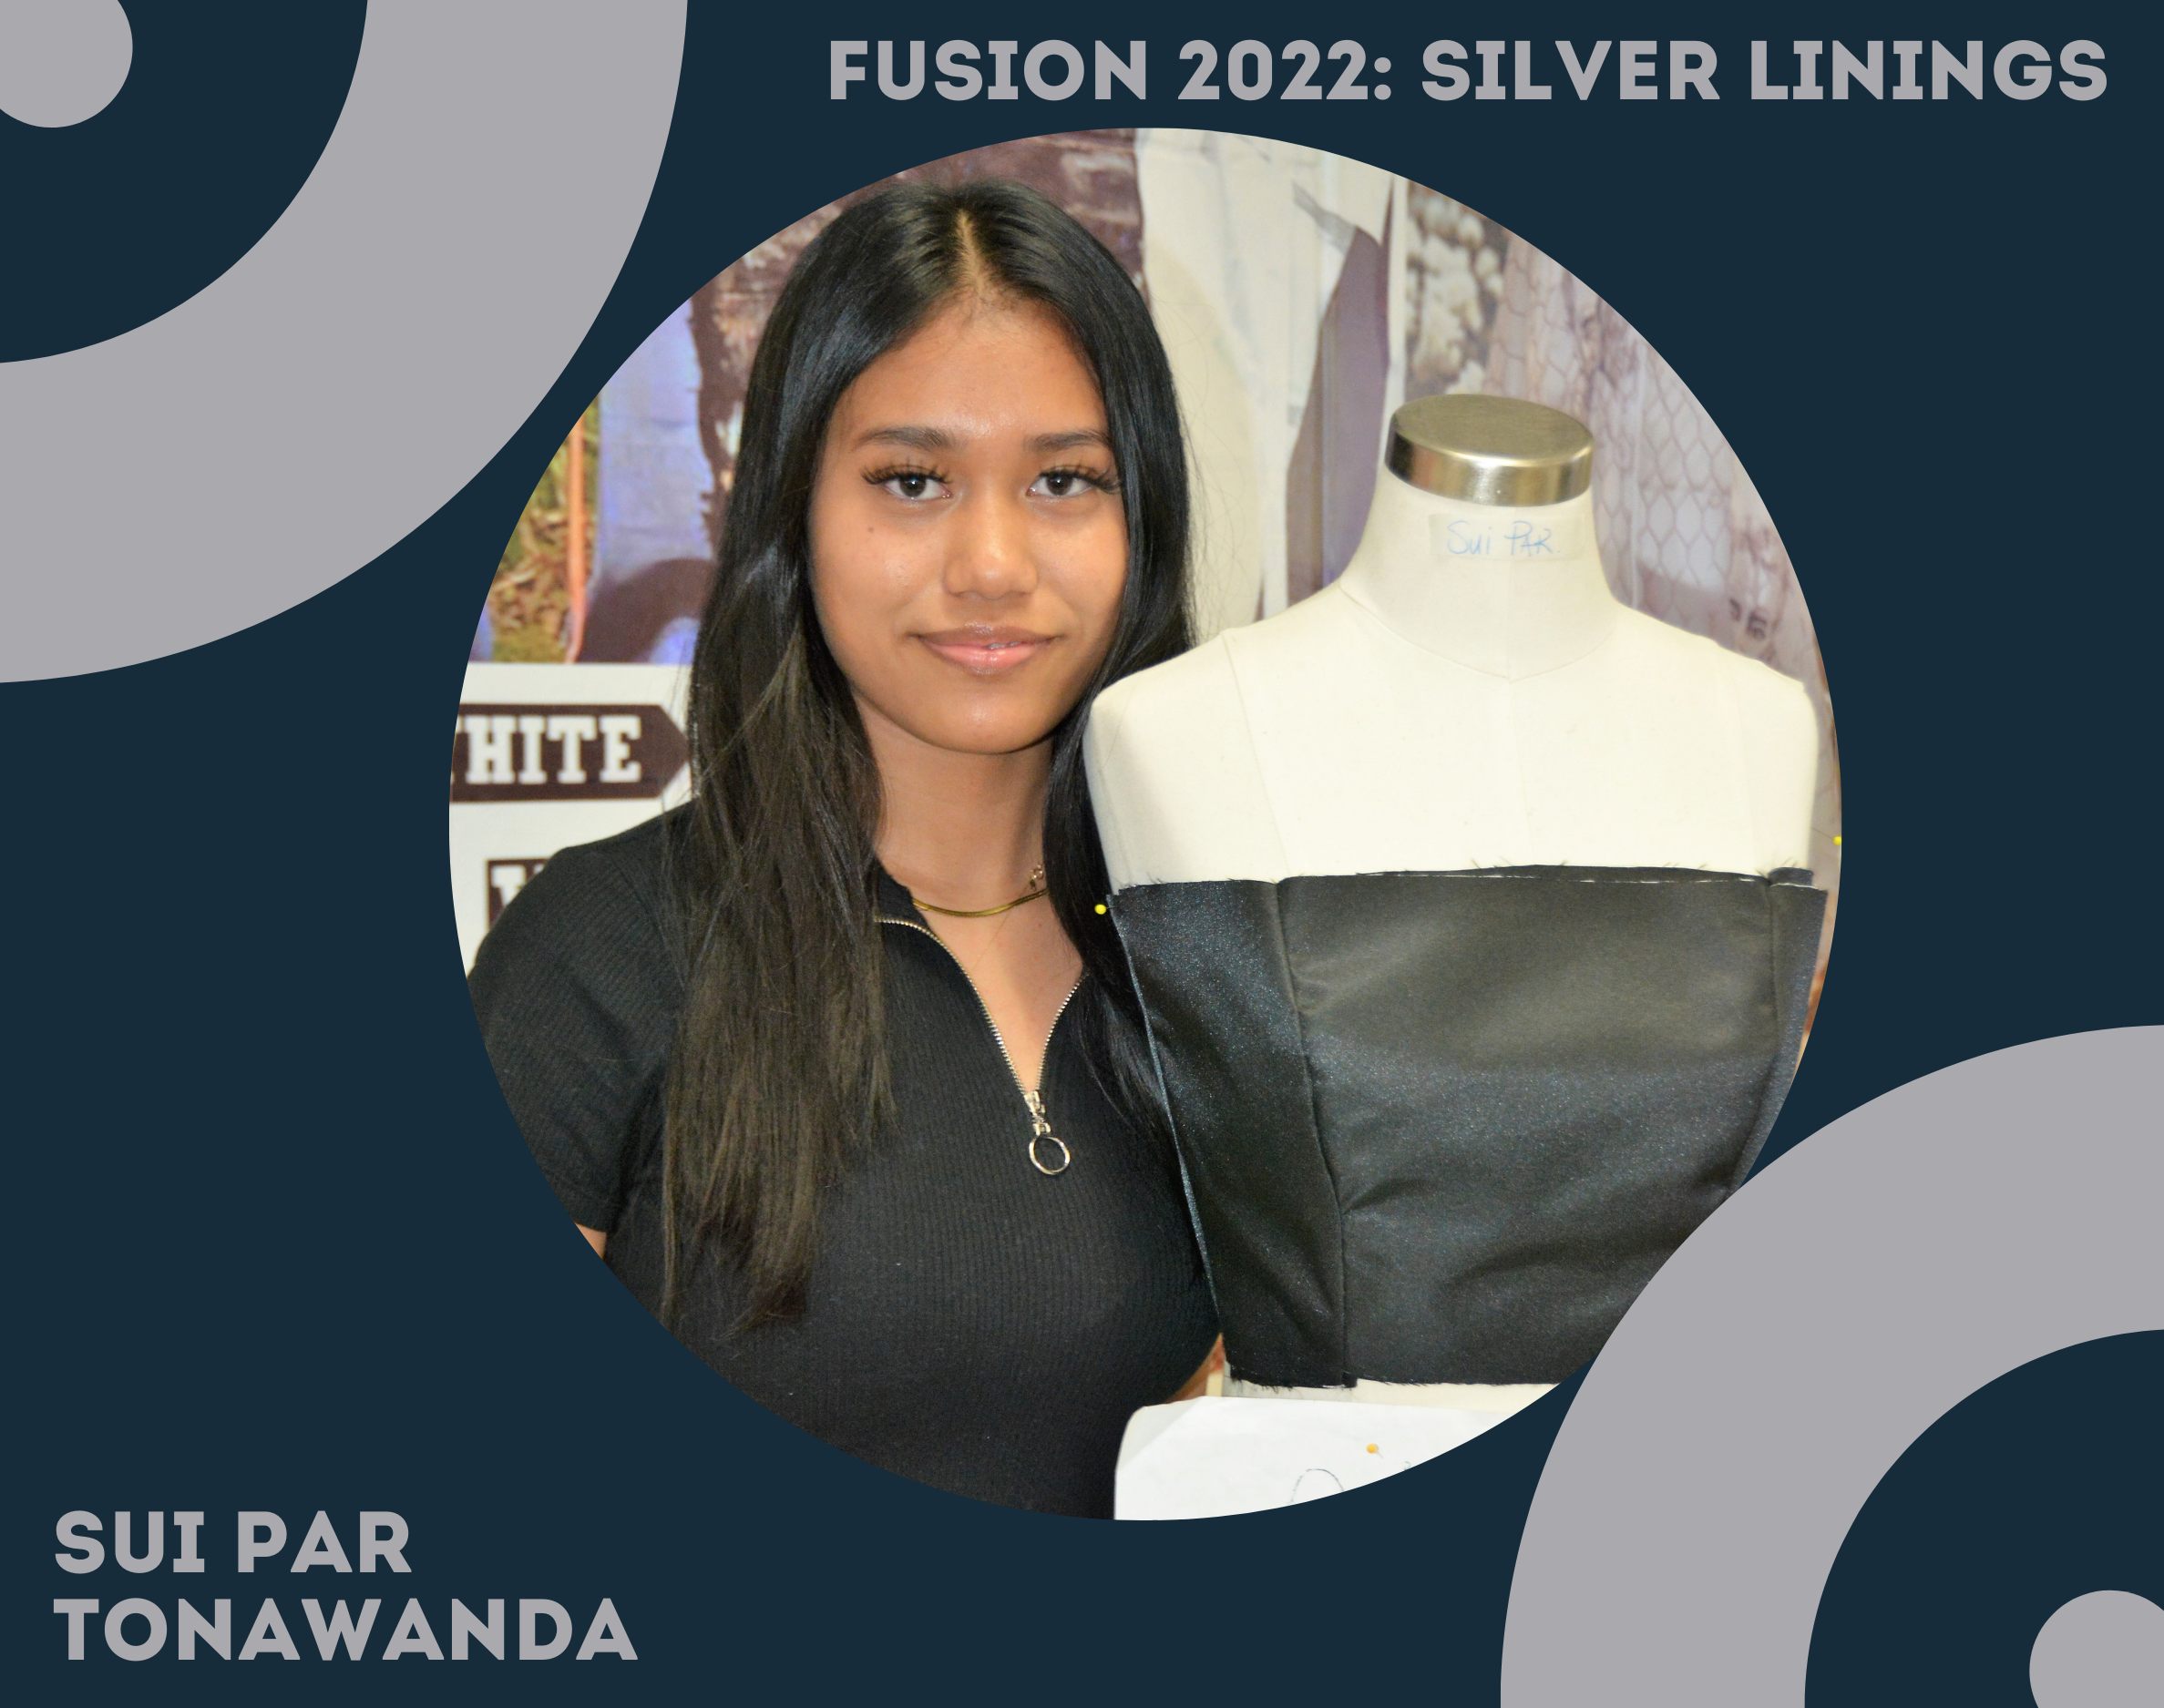 Fusion 2022: Silver Linings. Sui Par, Tonawanda